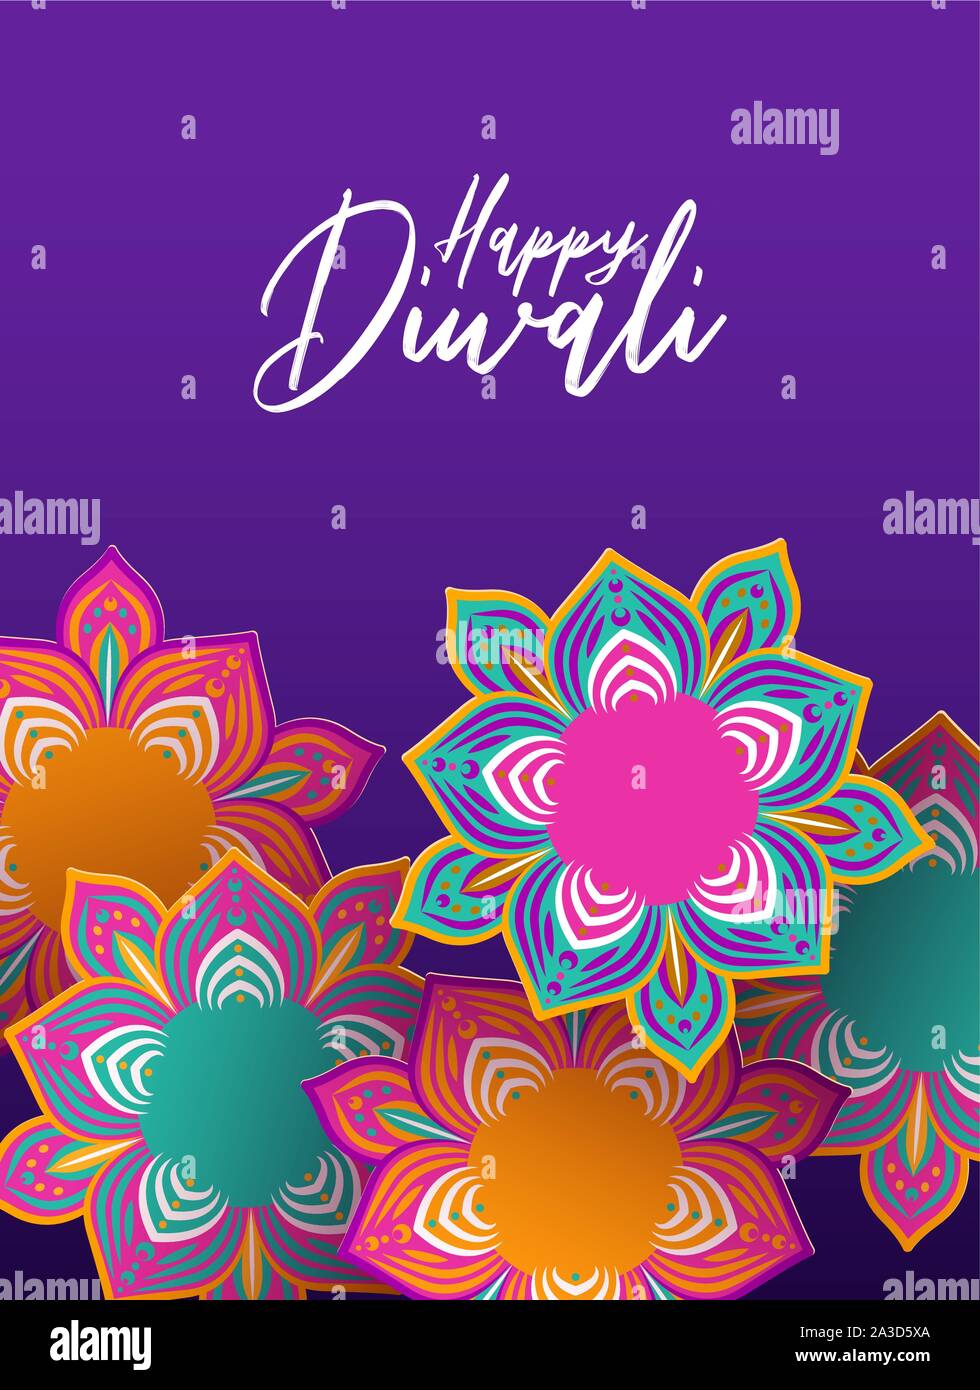 Happy Diwali festival carte de souhaits illustration de célébration hindoue traditionnelle en 3d fleurs style papercut pour Affaires indiennes maison de l'événement. Illustration de Vecteur